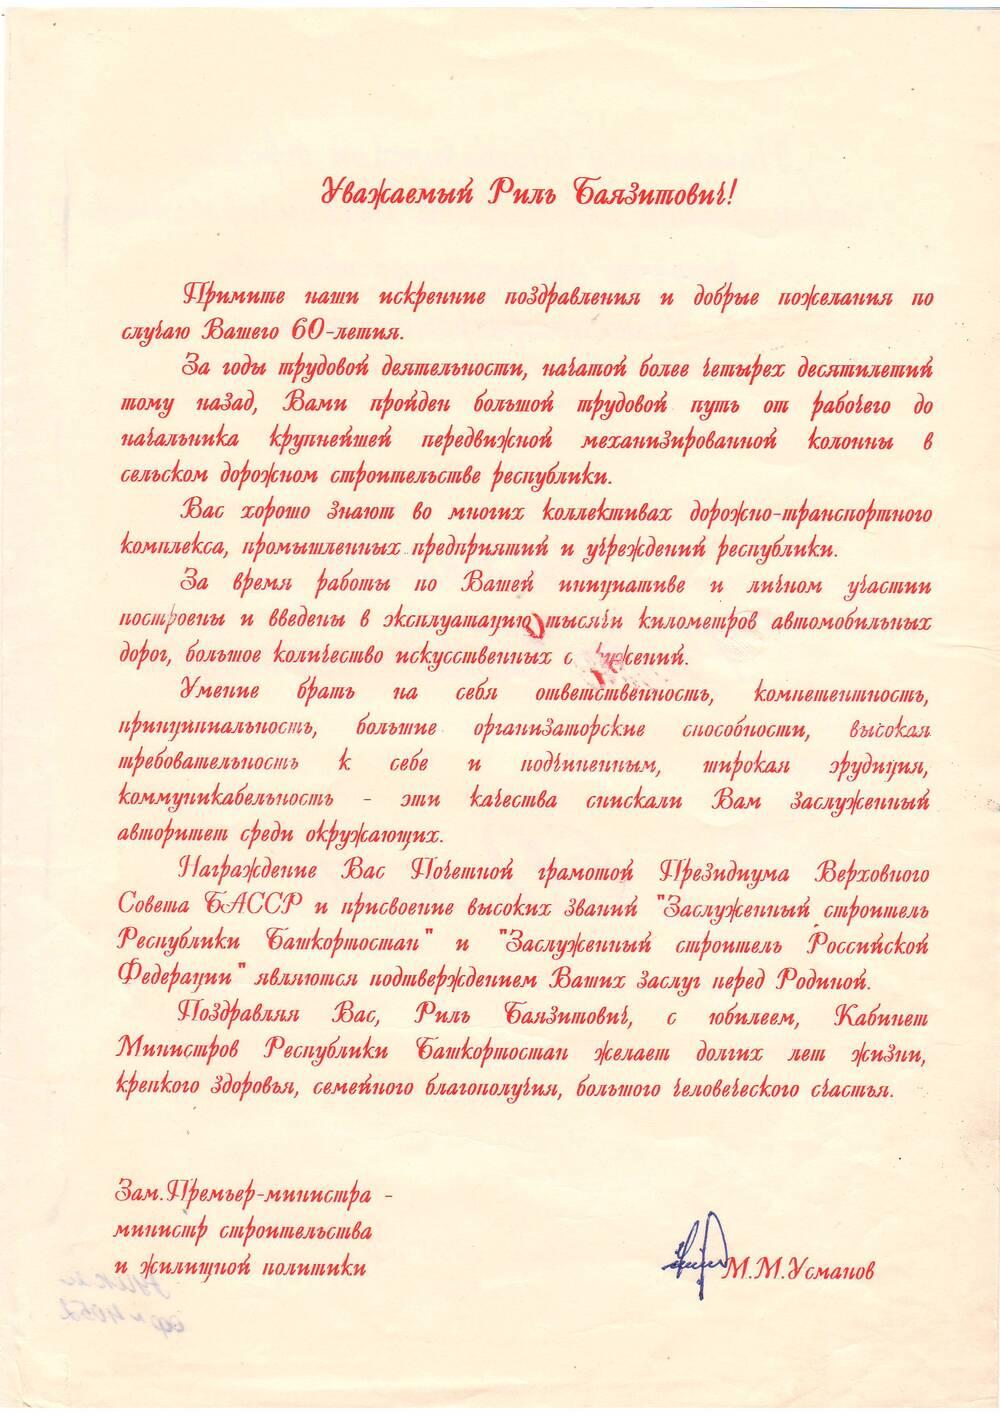 Поздравительный лист Бикметову Р.Б.